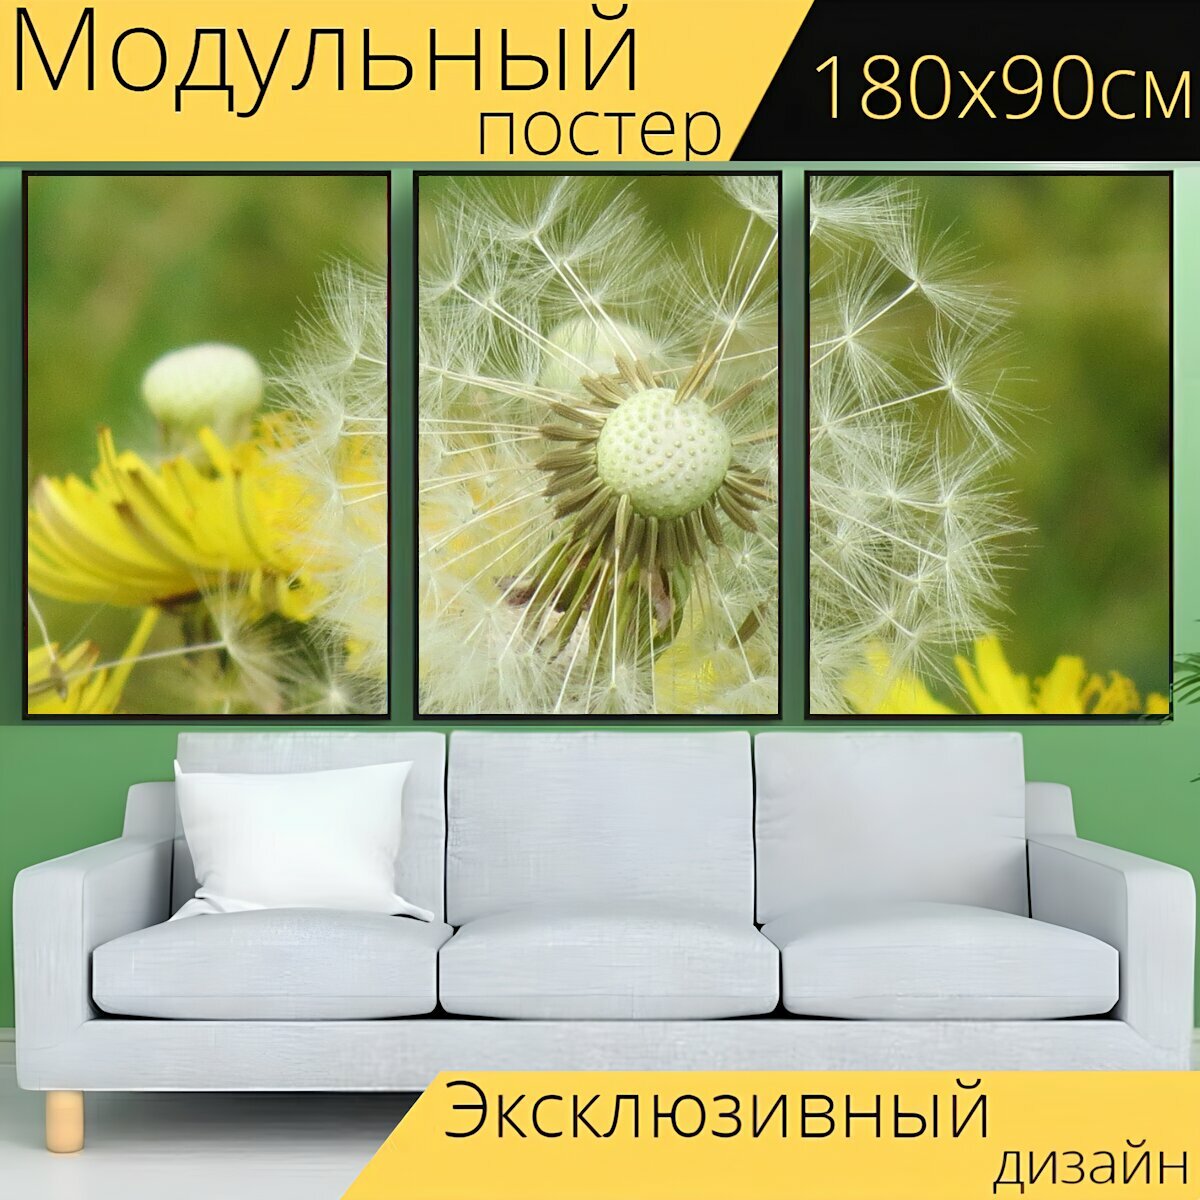 Модульный постер "Одуванчик, цветок одуванчика, весна" 180 x 90 см. для интерьера